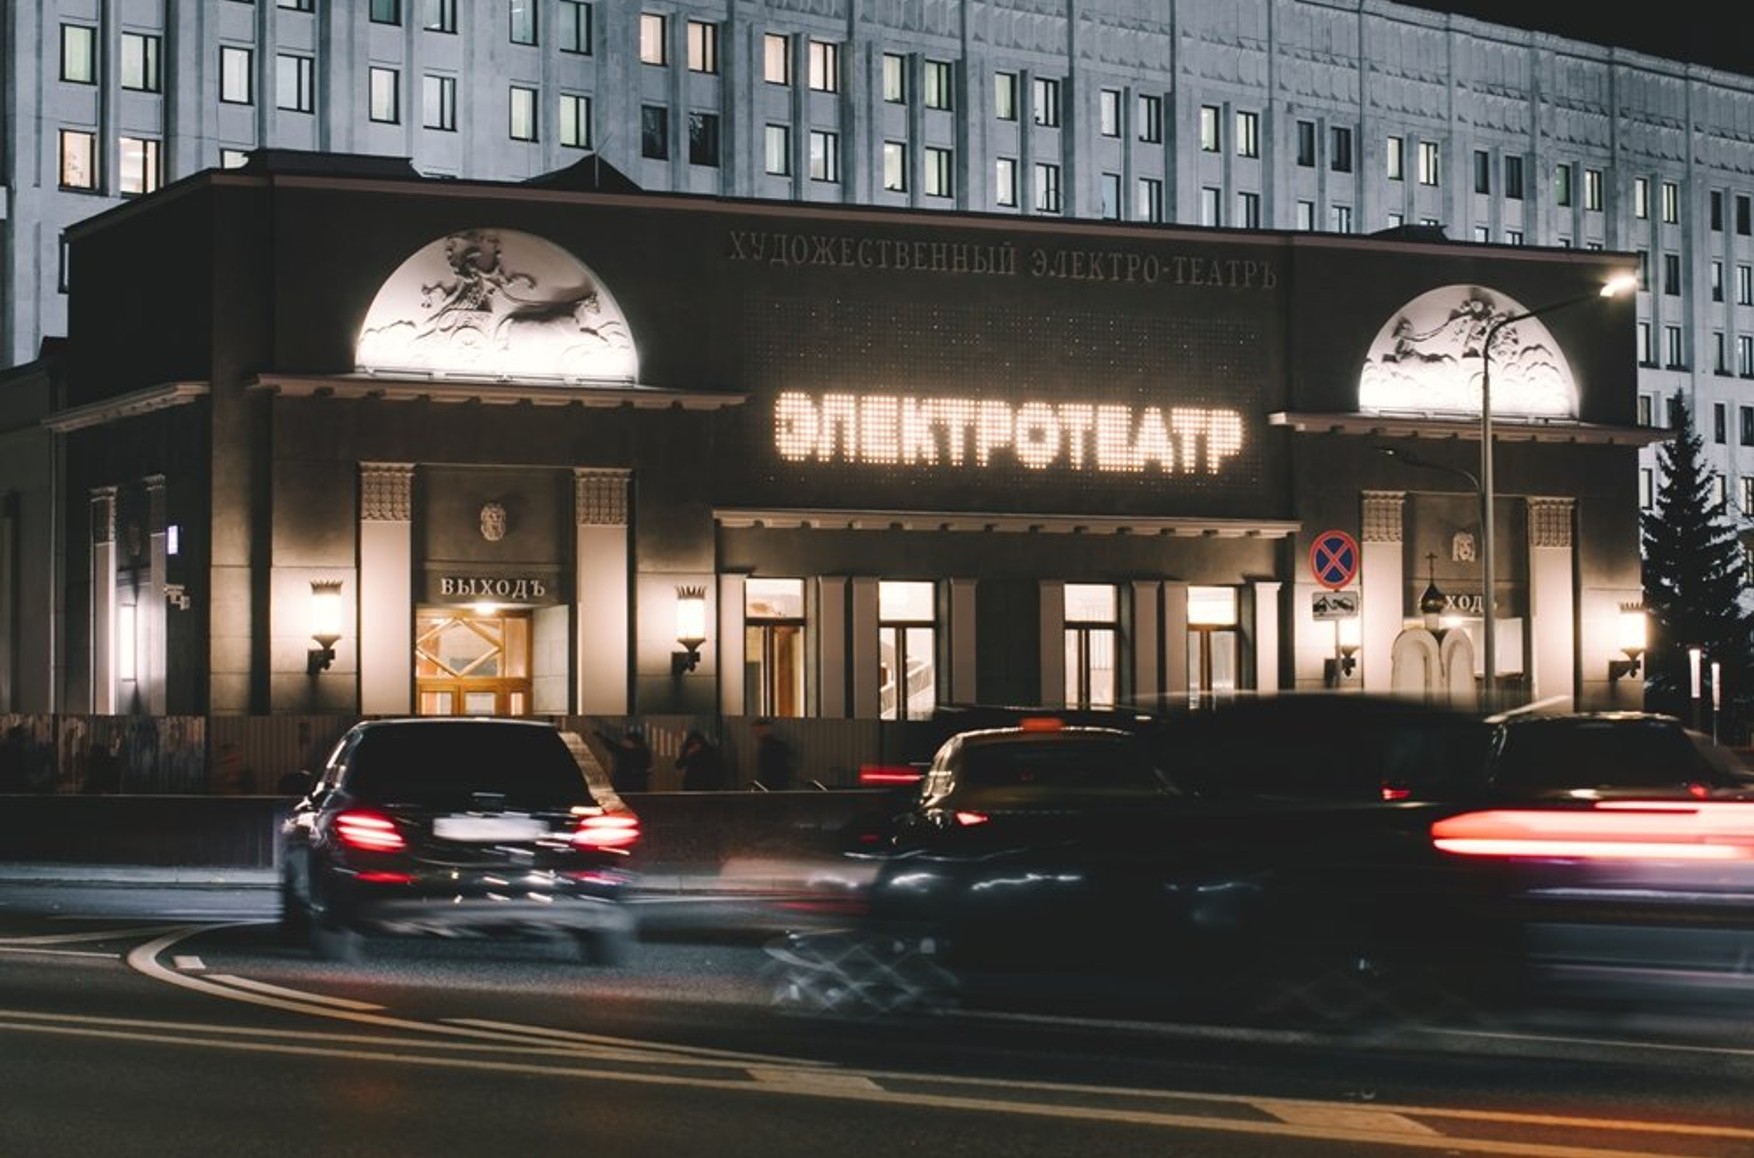 Кінотеатр «Художній» відкриється в Москві 9 квітня після реставрації